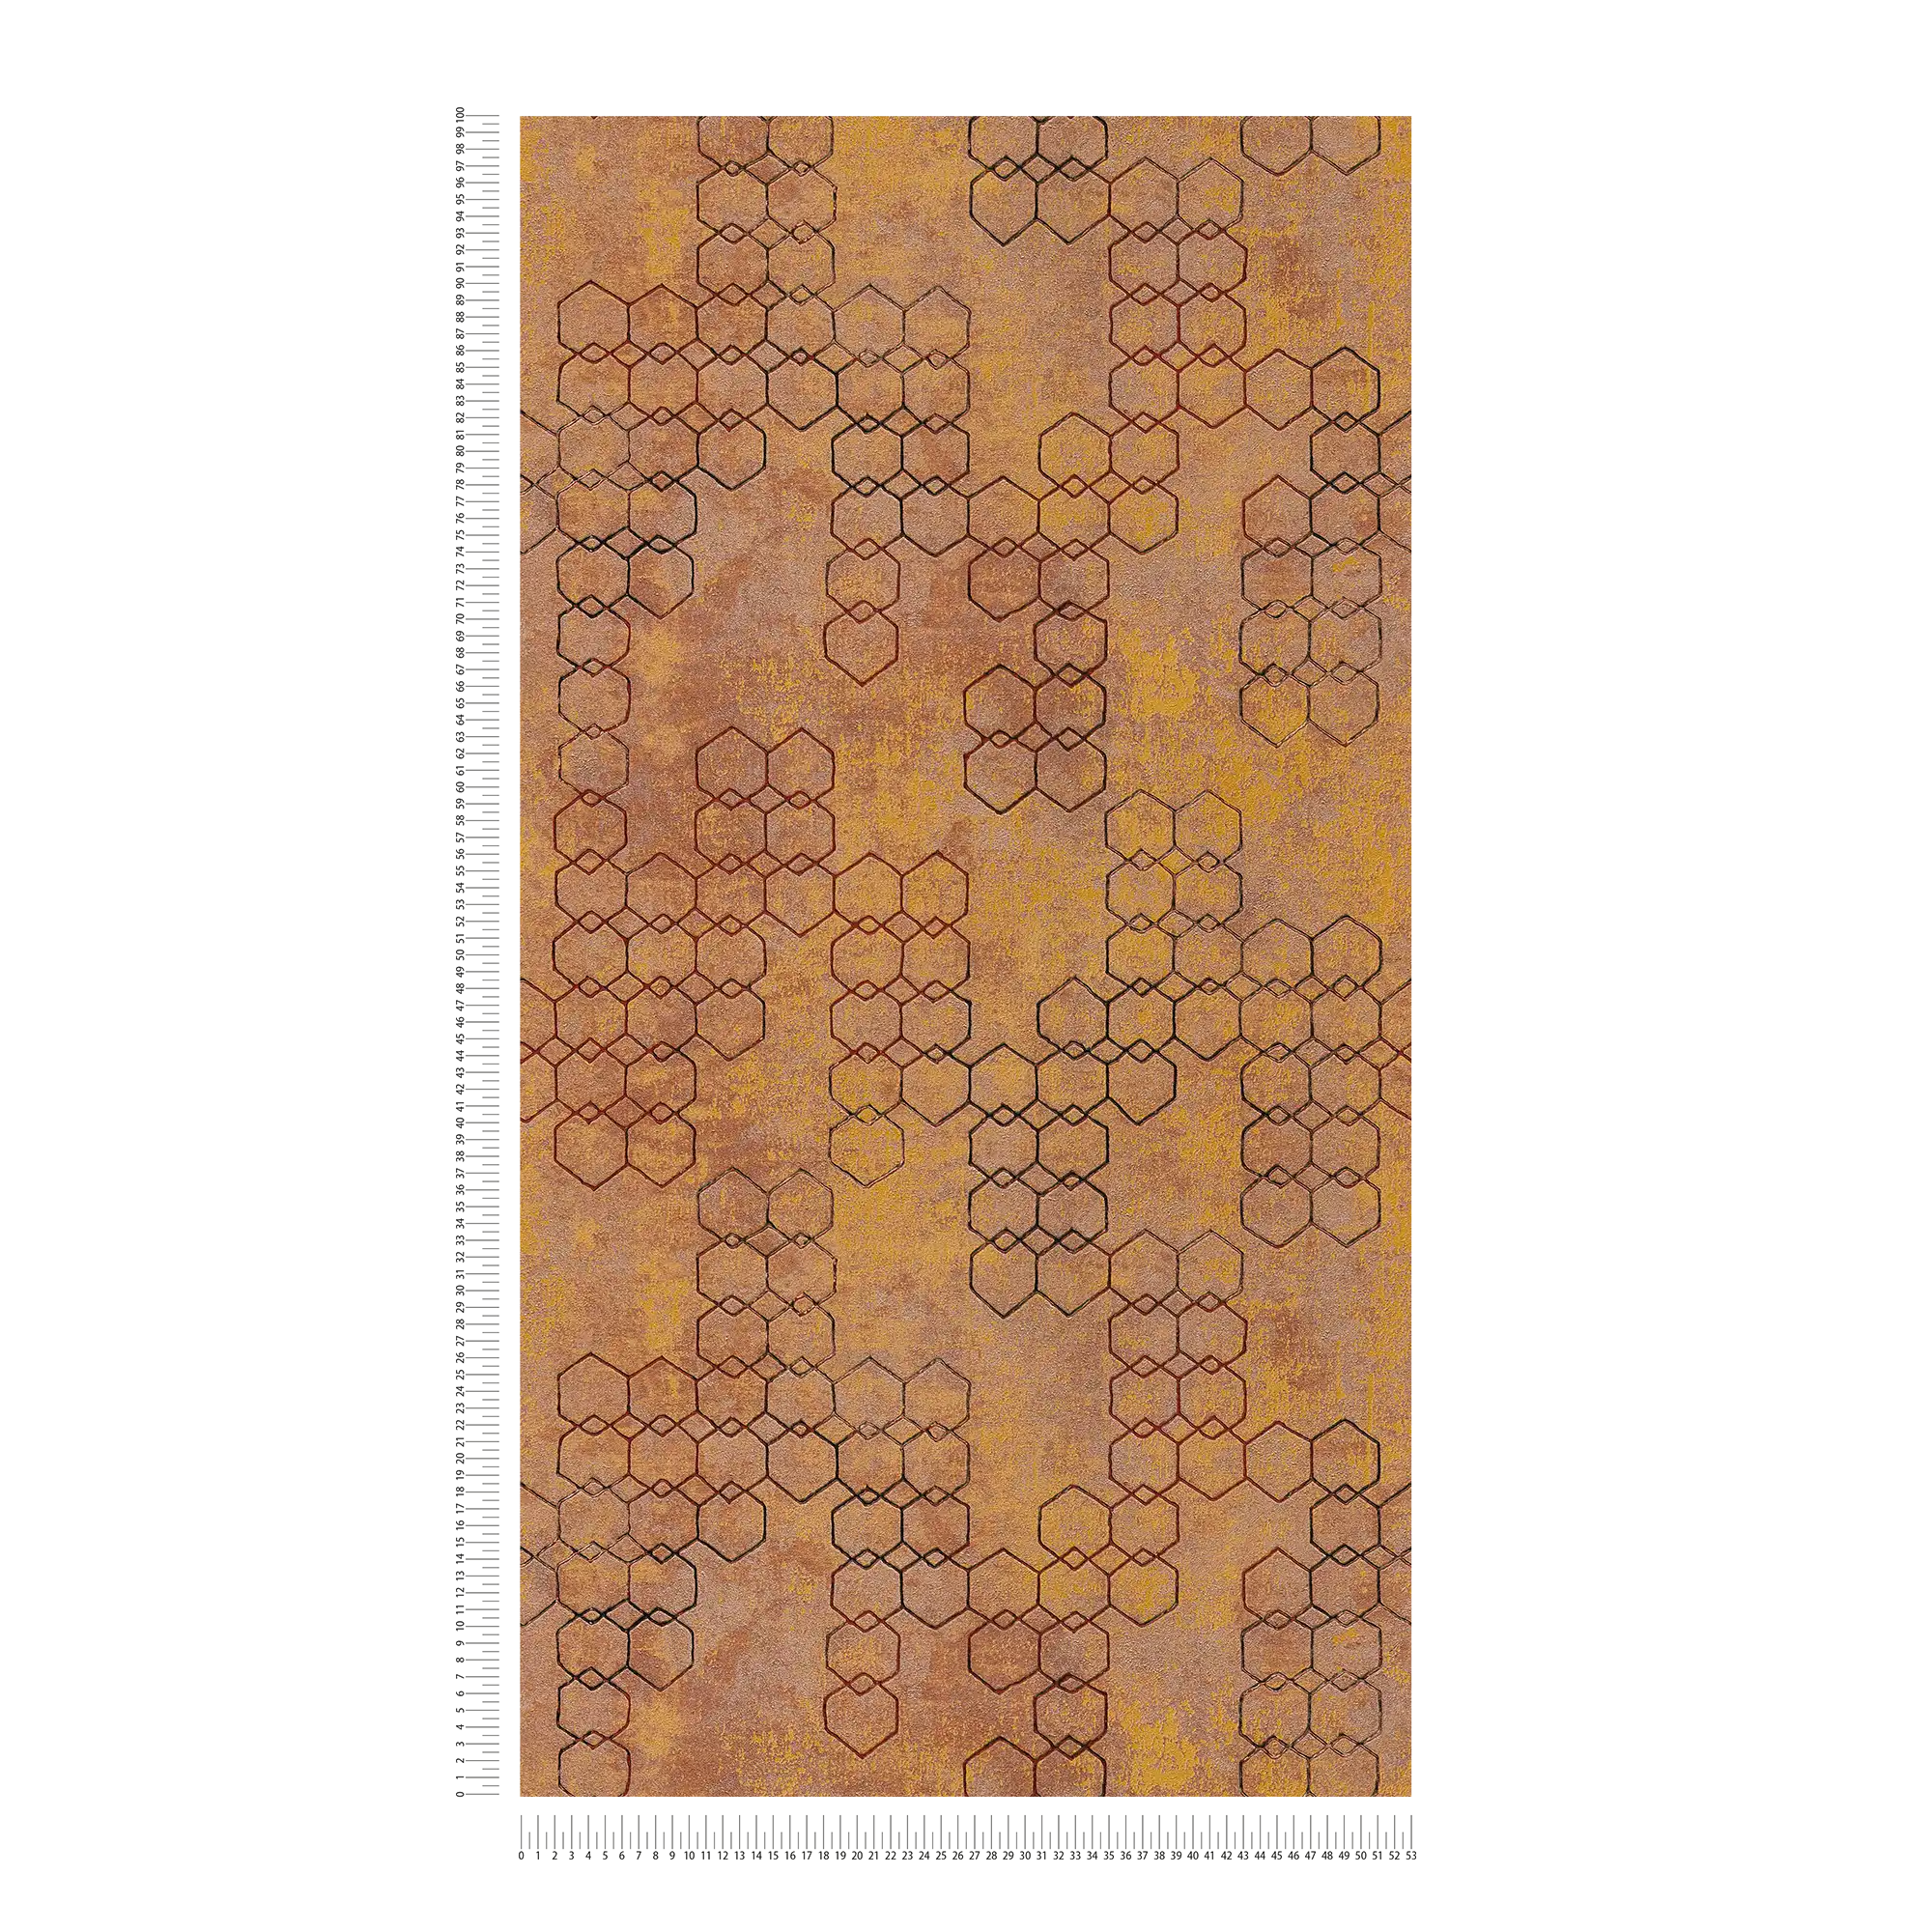             Papier peint à motifs géométriques de style industriel - orange, or, marron
        